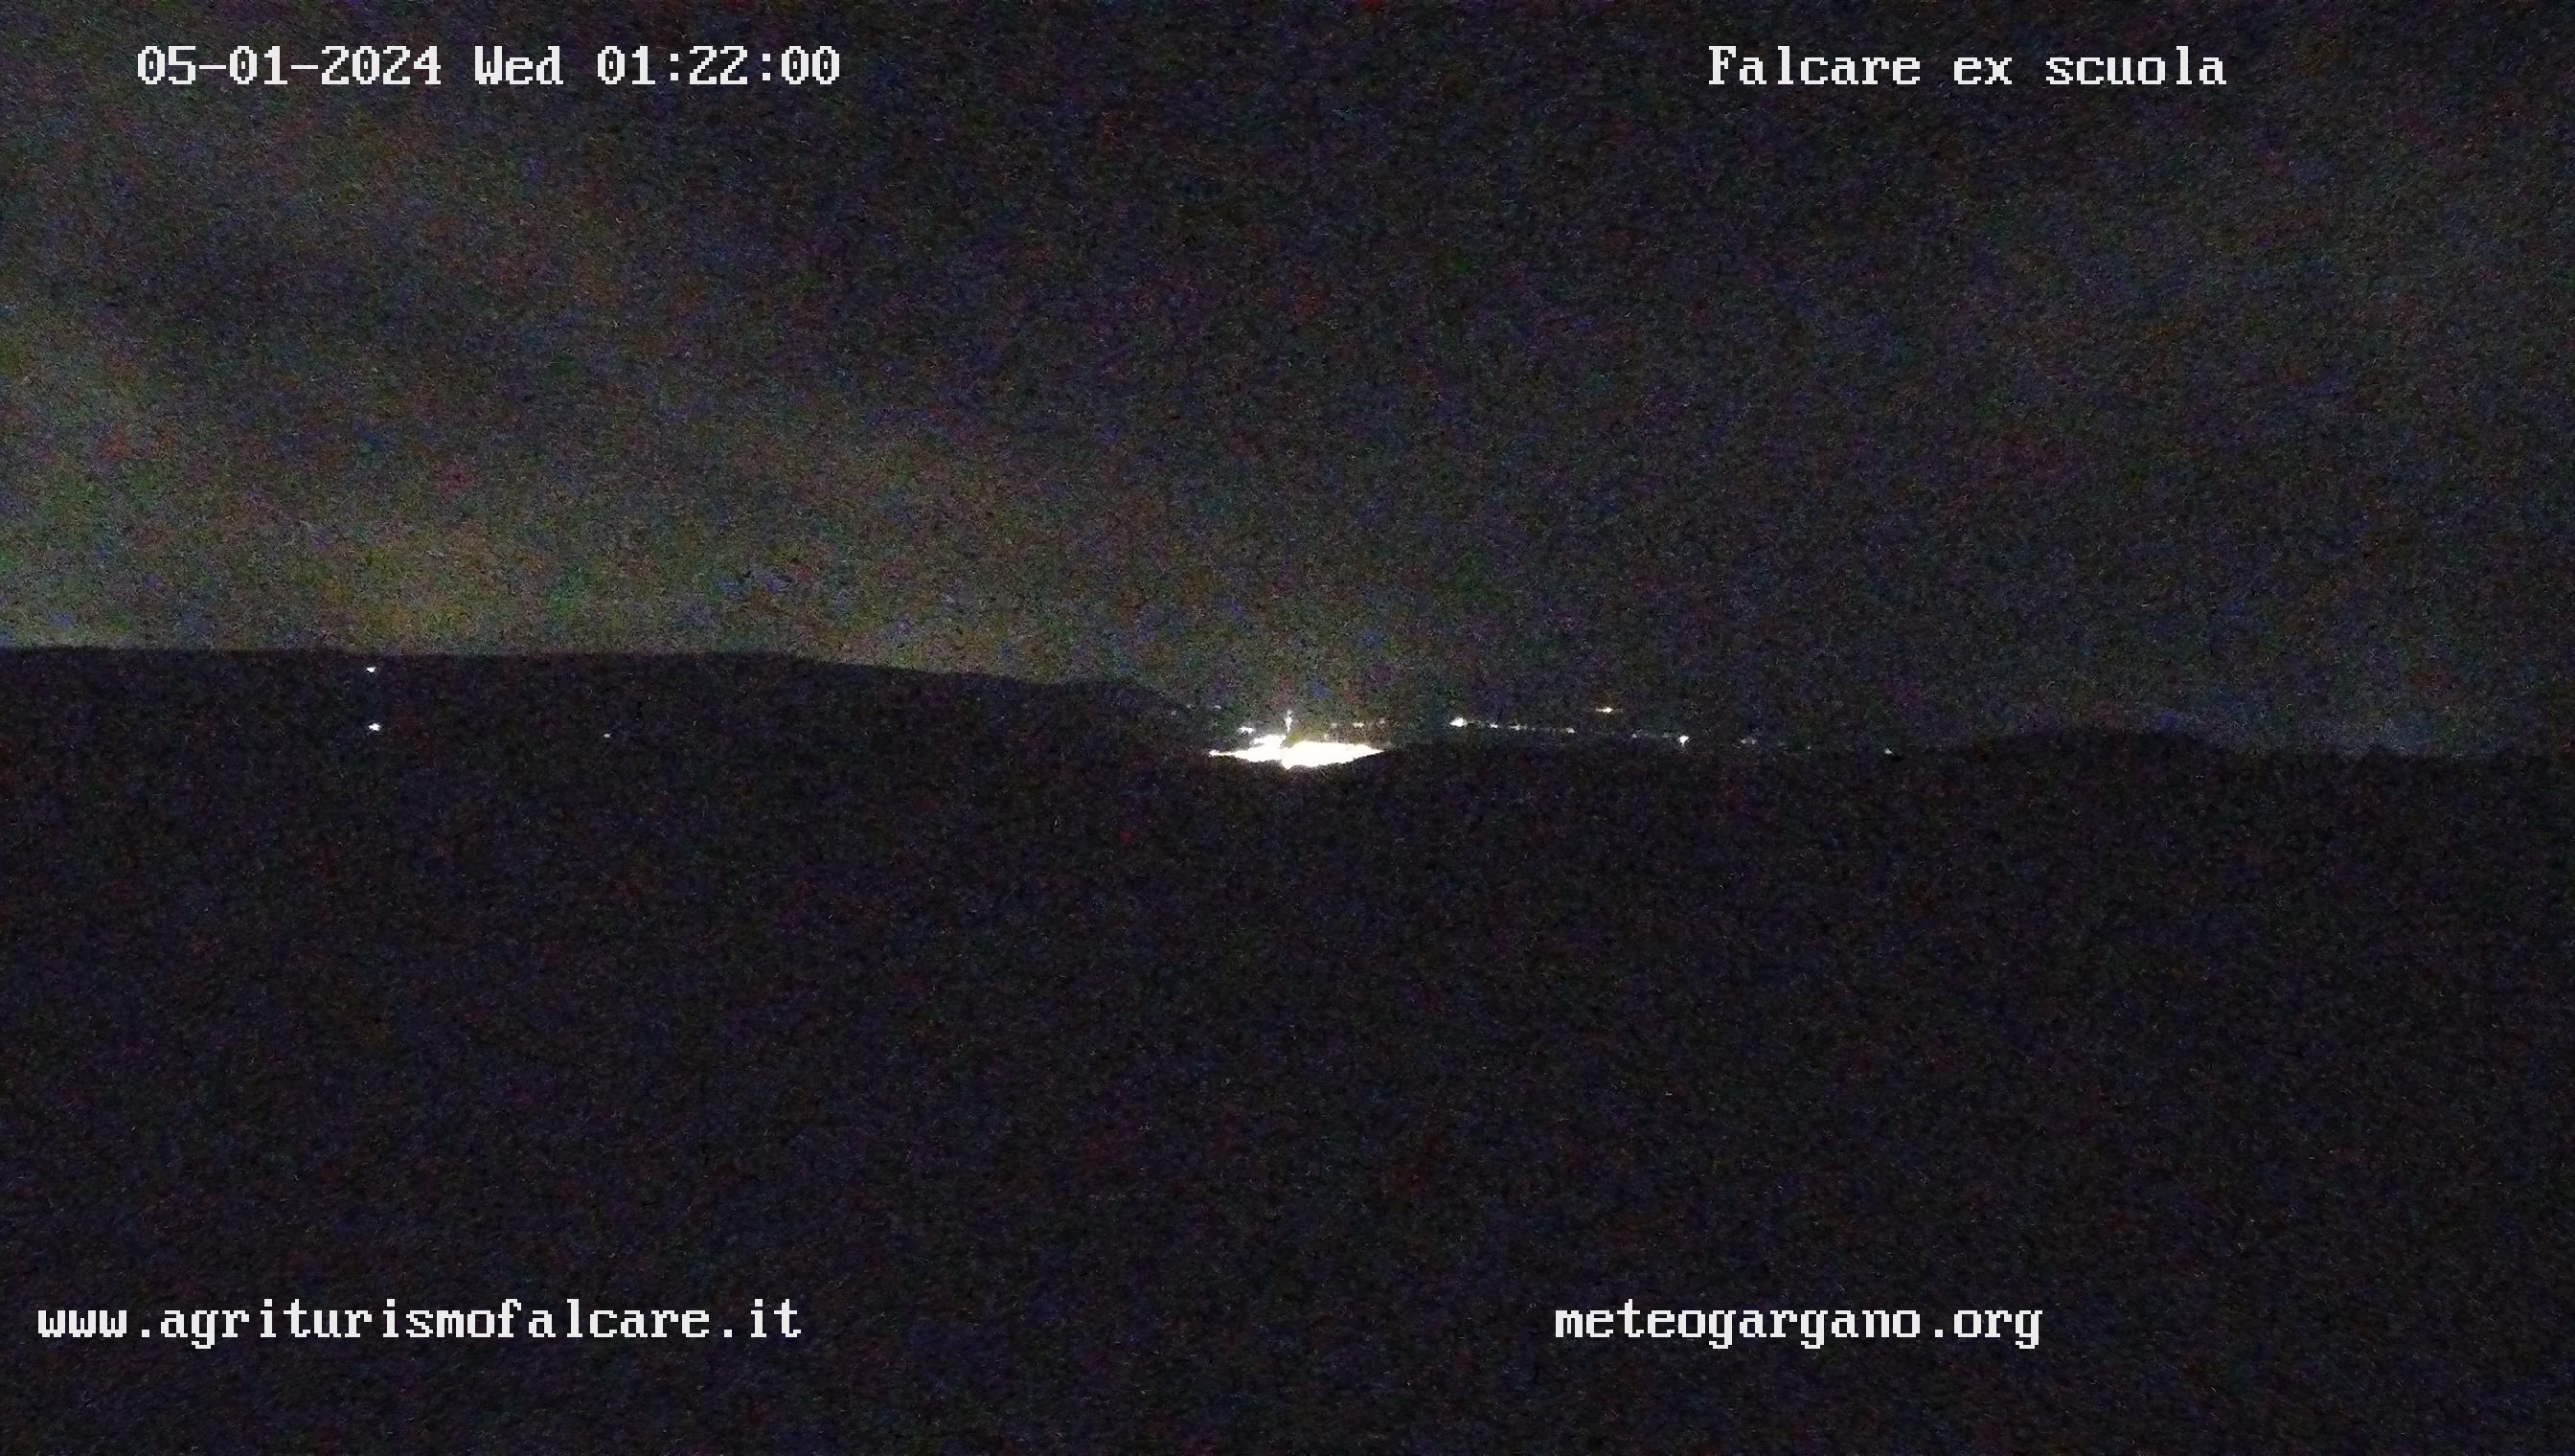 Webcam Cagnano Varano im Gargano - Apulien mit Blickrichtung Nordwest auf den Lago die Varano und die Adria